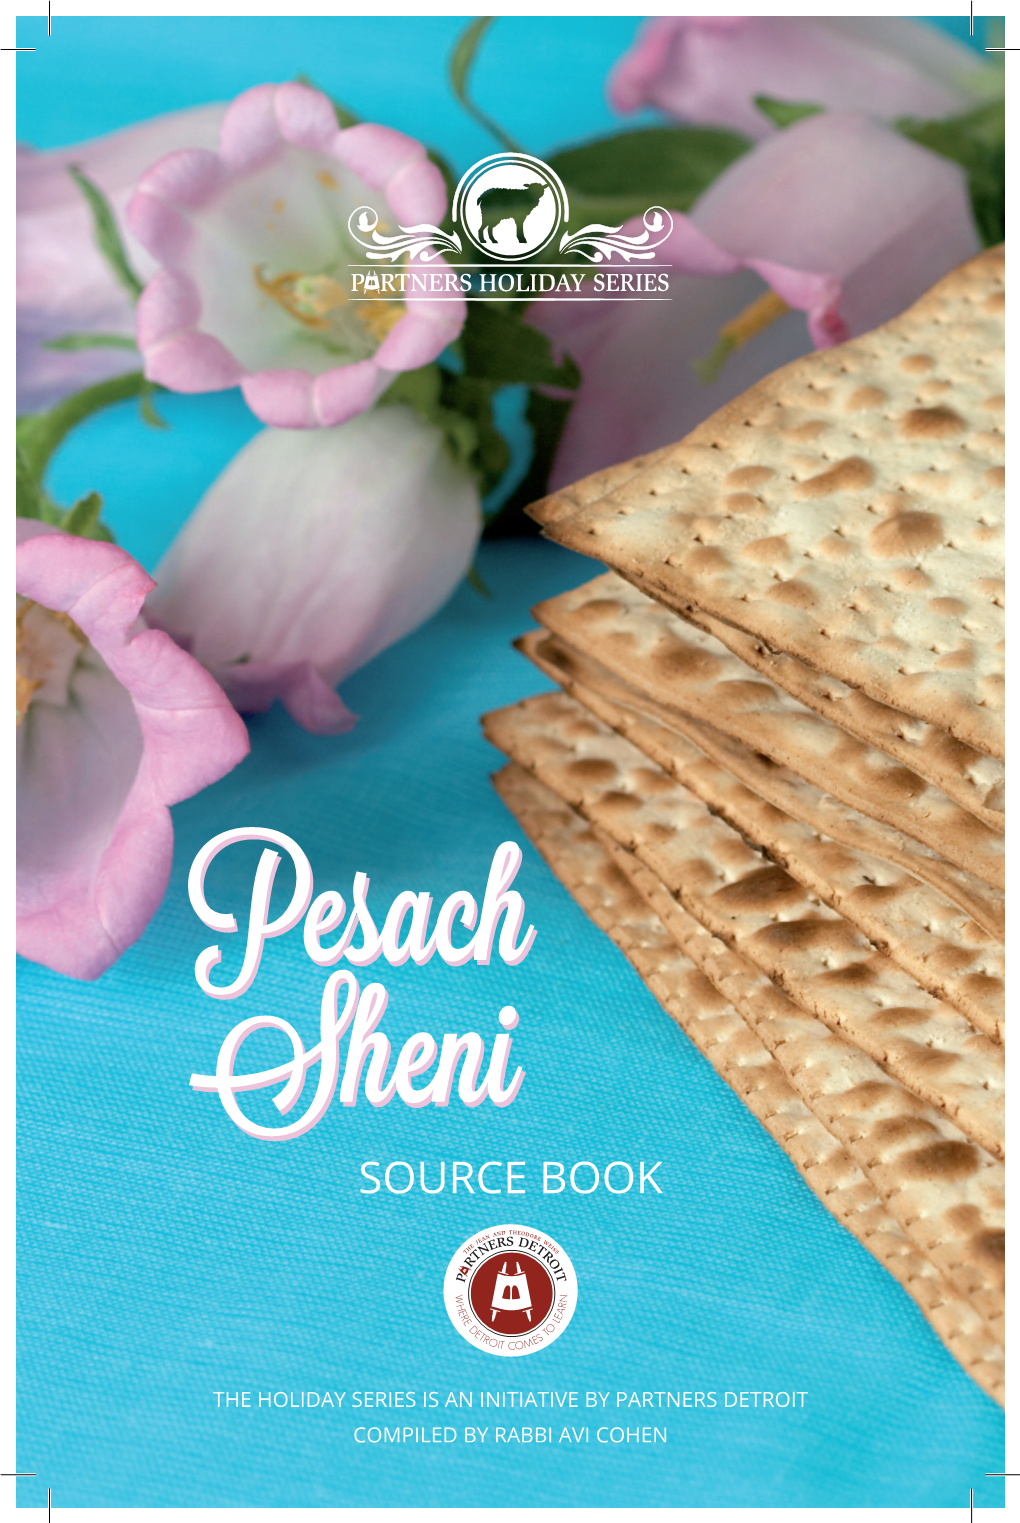 Pesach Sheni